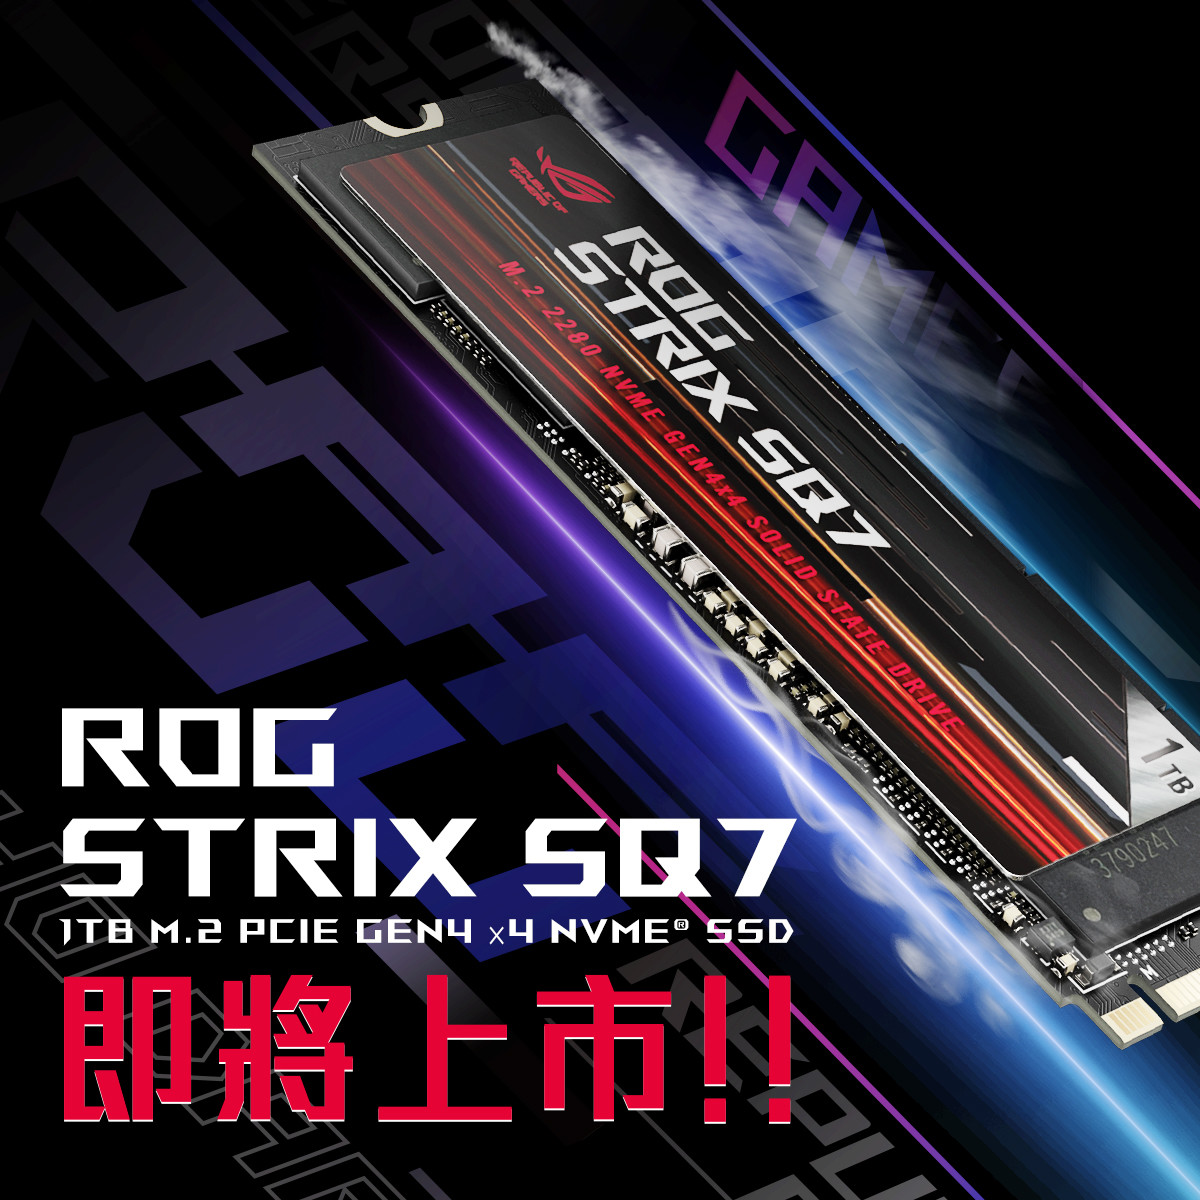 照片中提到了6 ROG、ROG、STRIX SR7，包含了固態硬盤、固態硬盤、華碩、NVM Express、PCI Express